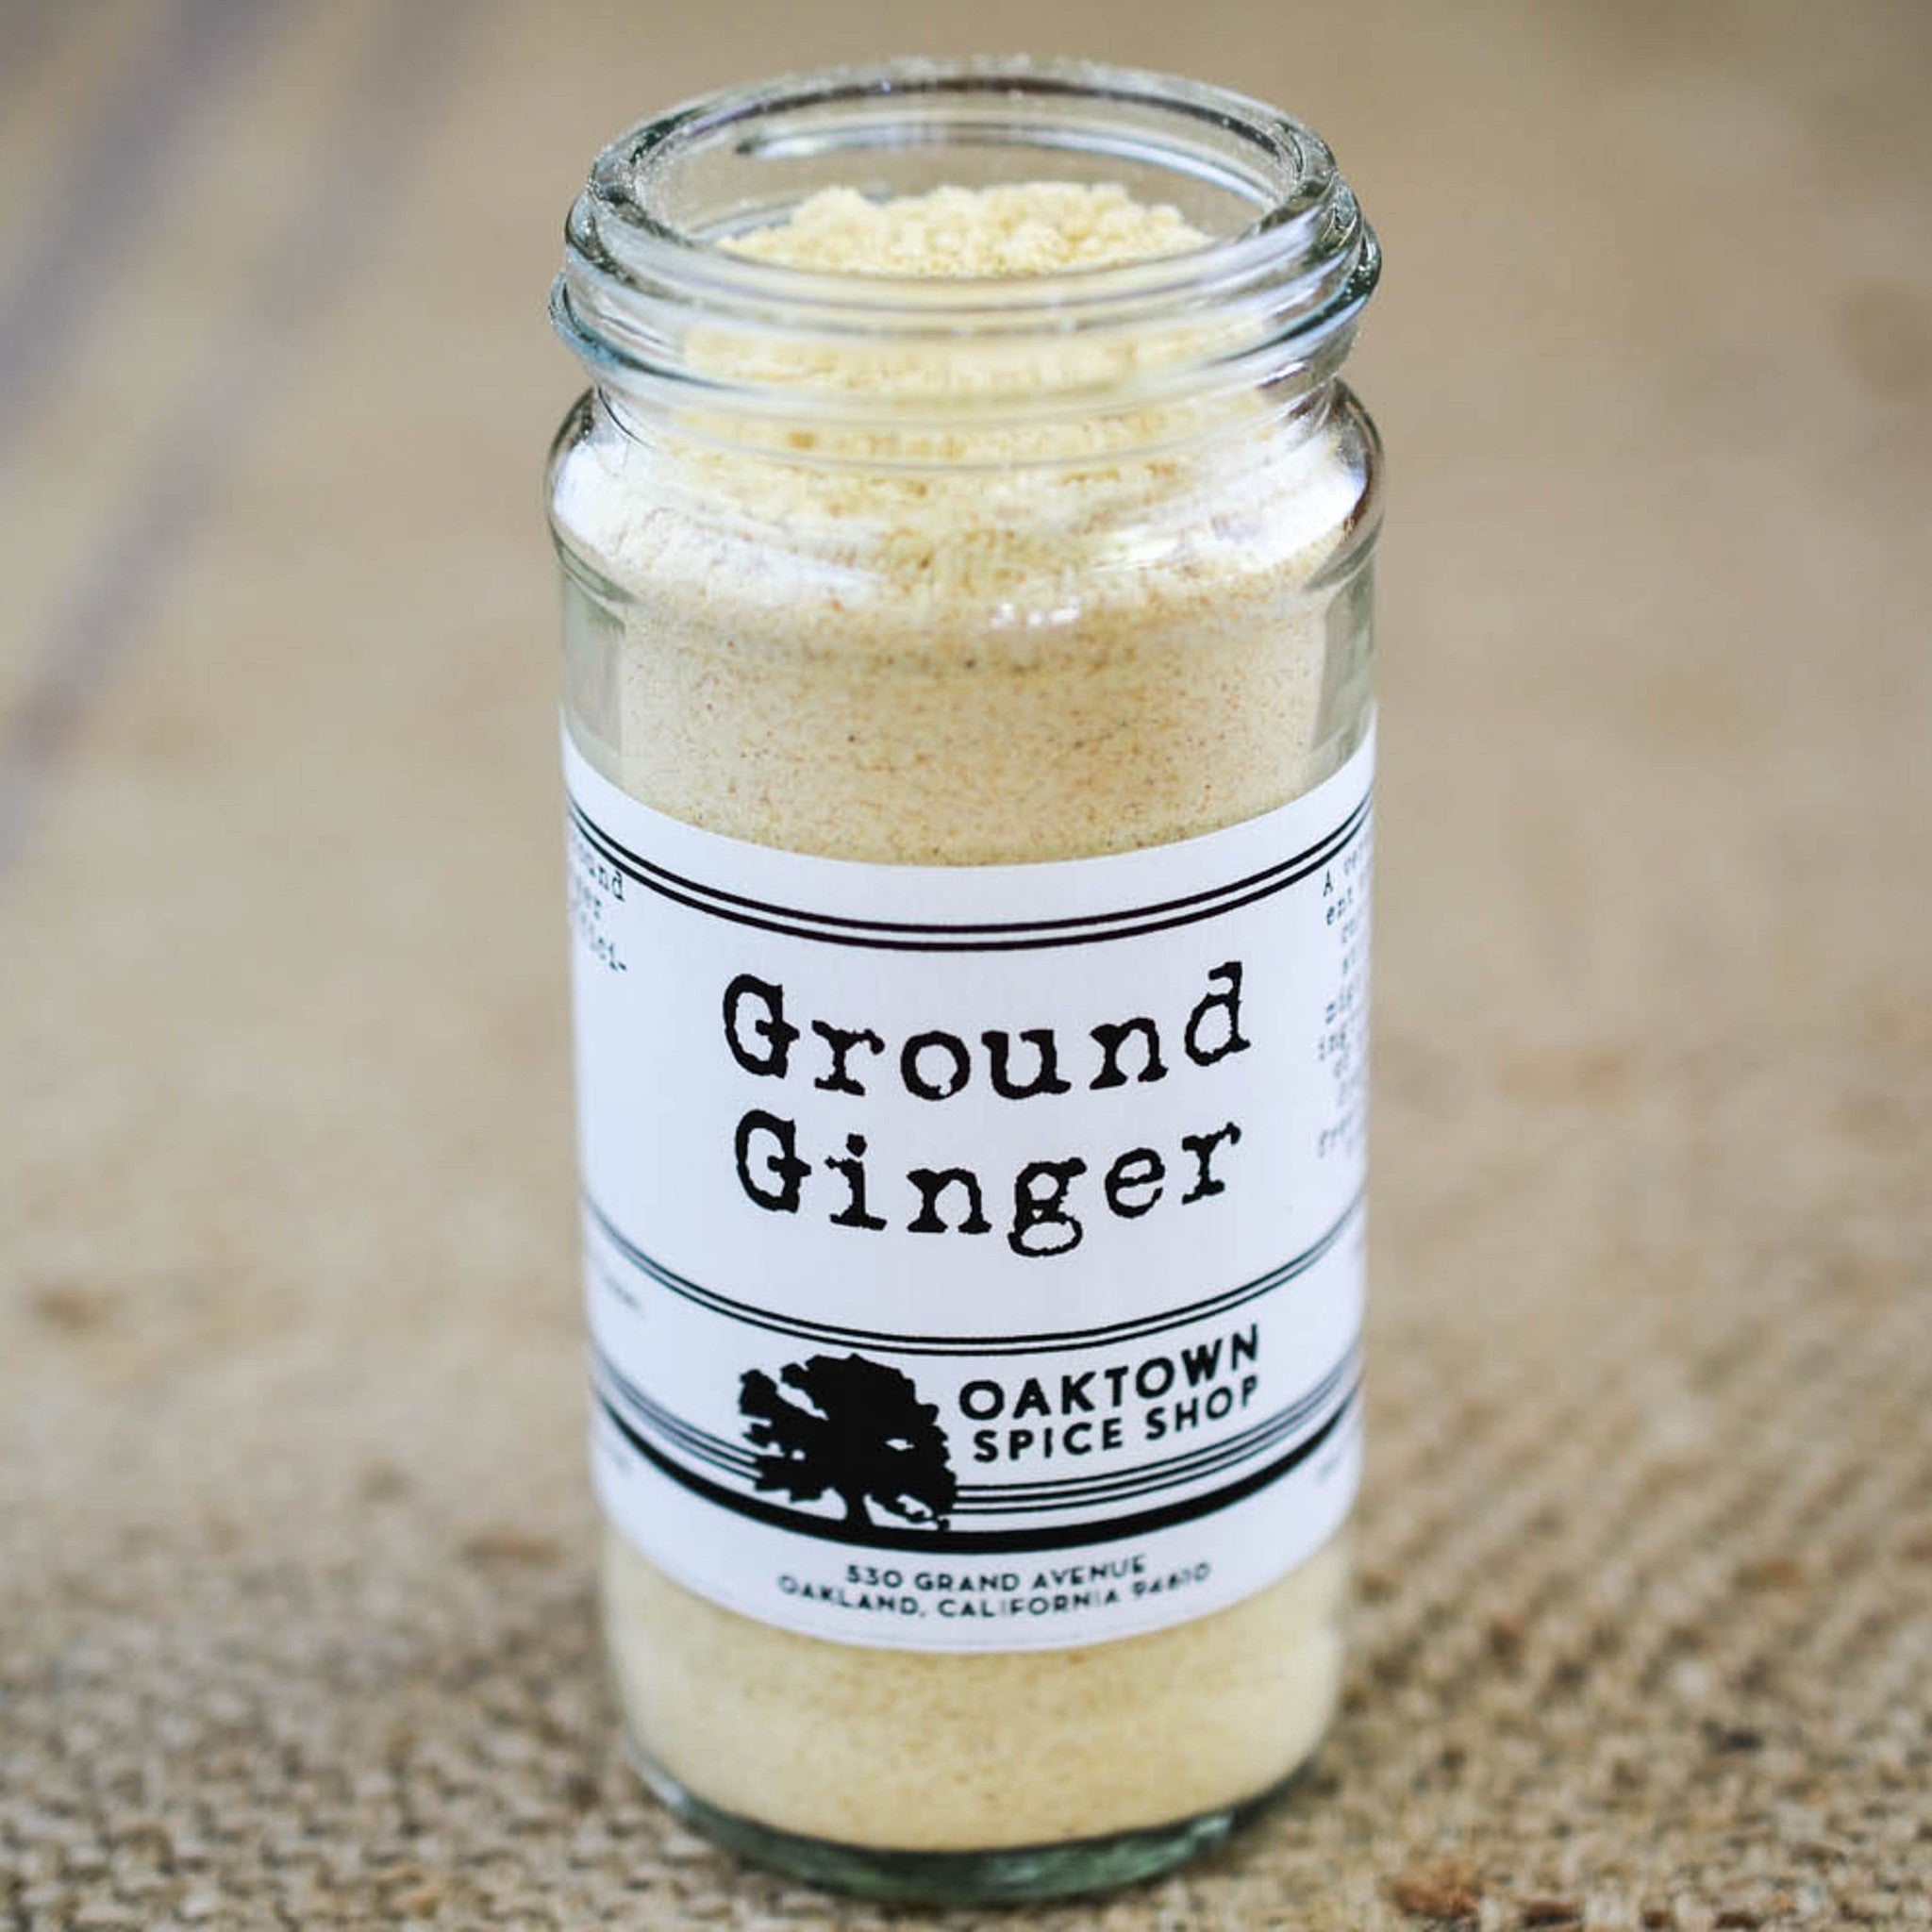 Ground Ginger. Fresh Ground Spices at Oaktown Spice Shop.